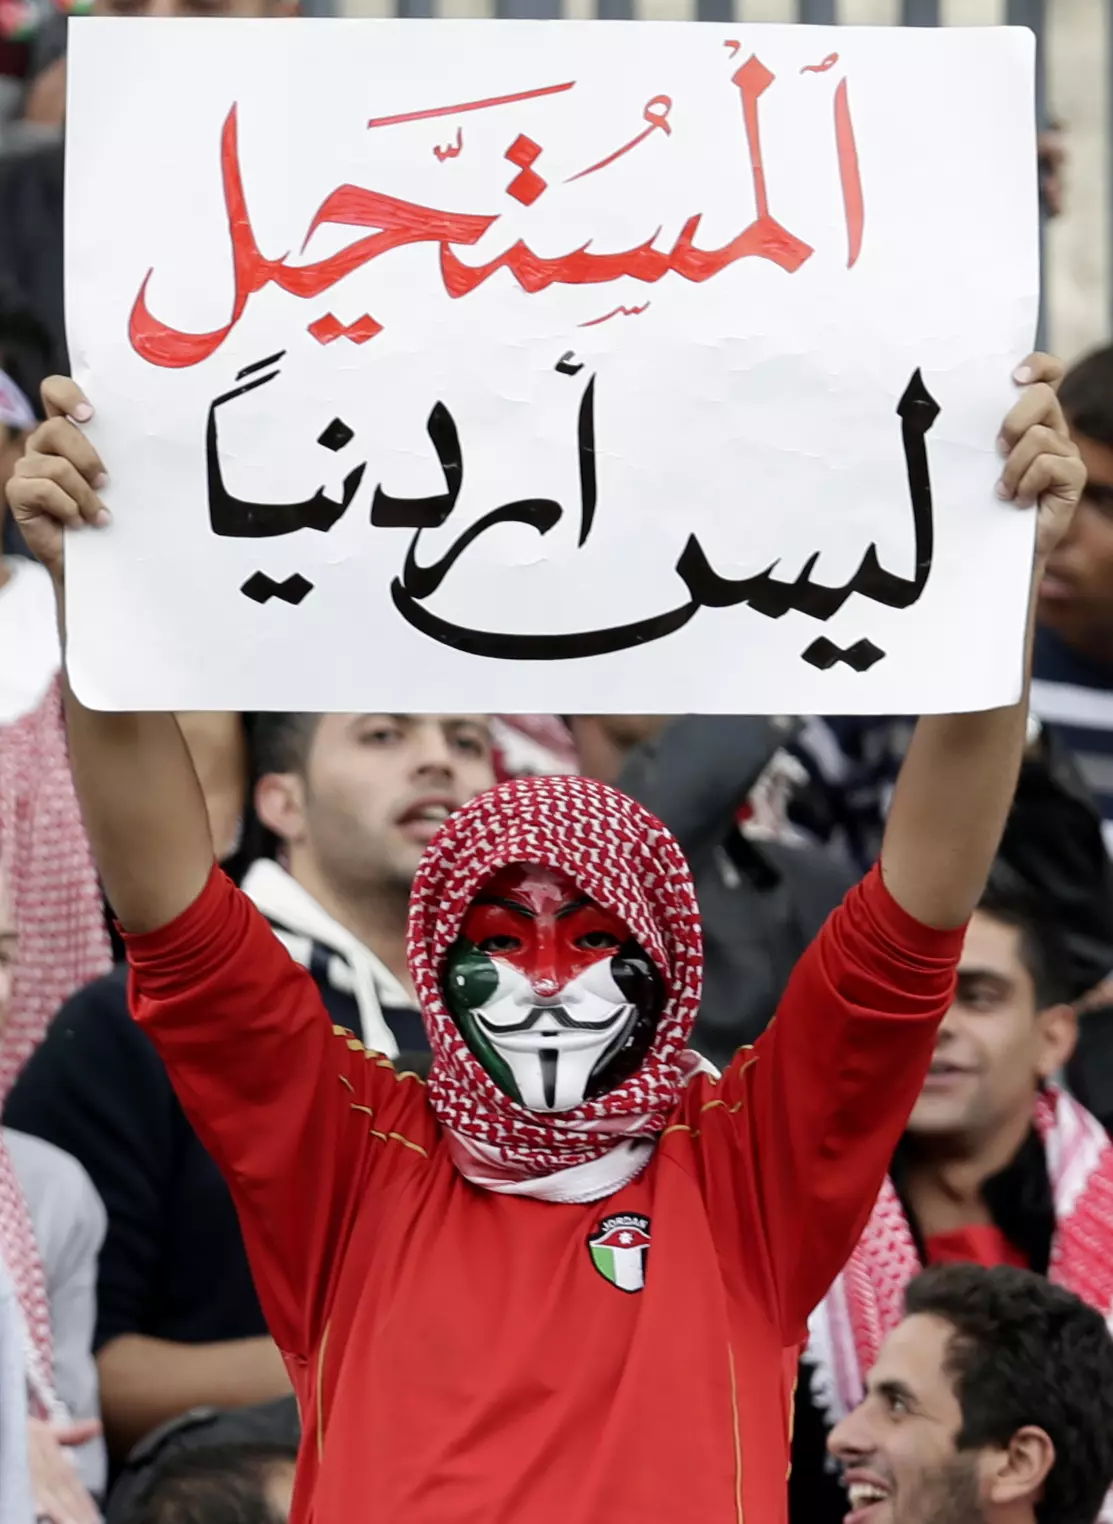 "הבלתי אפשרי איננו ירדני". אוהד במשחק הנבחרת בעמאן